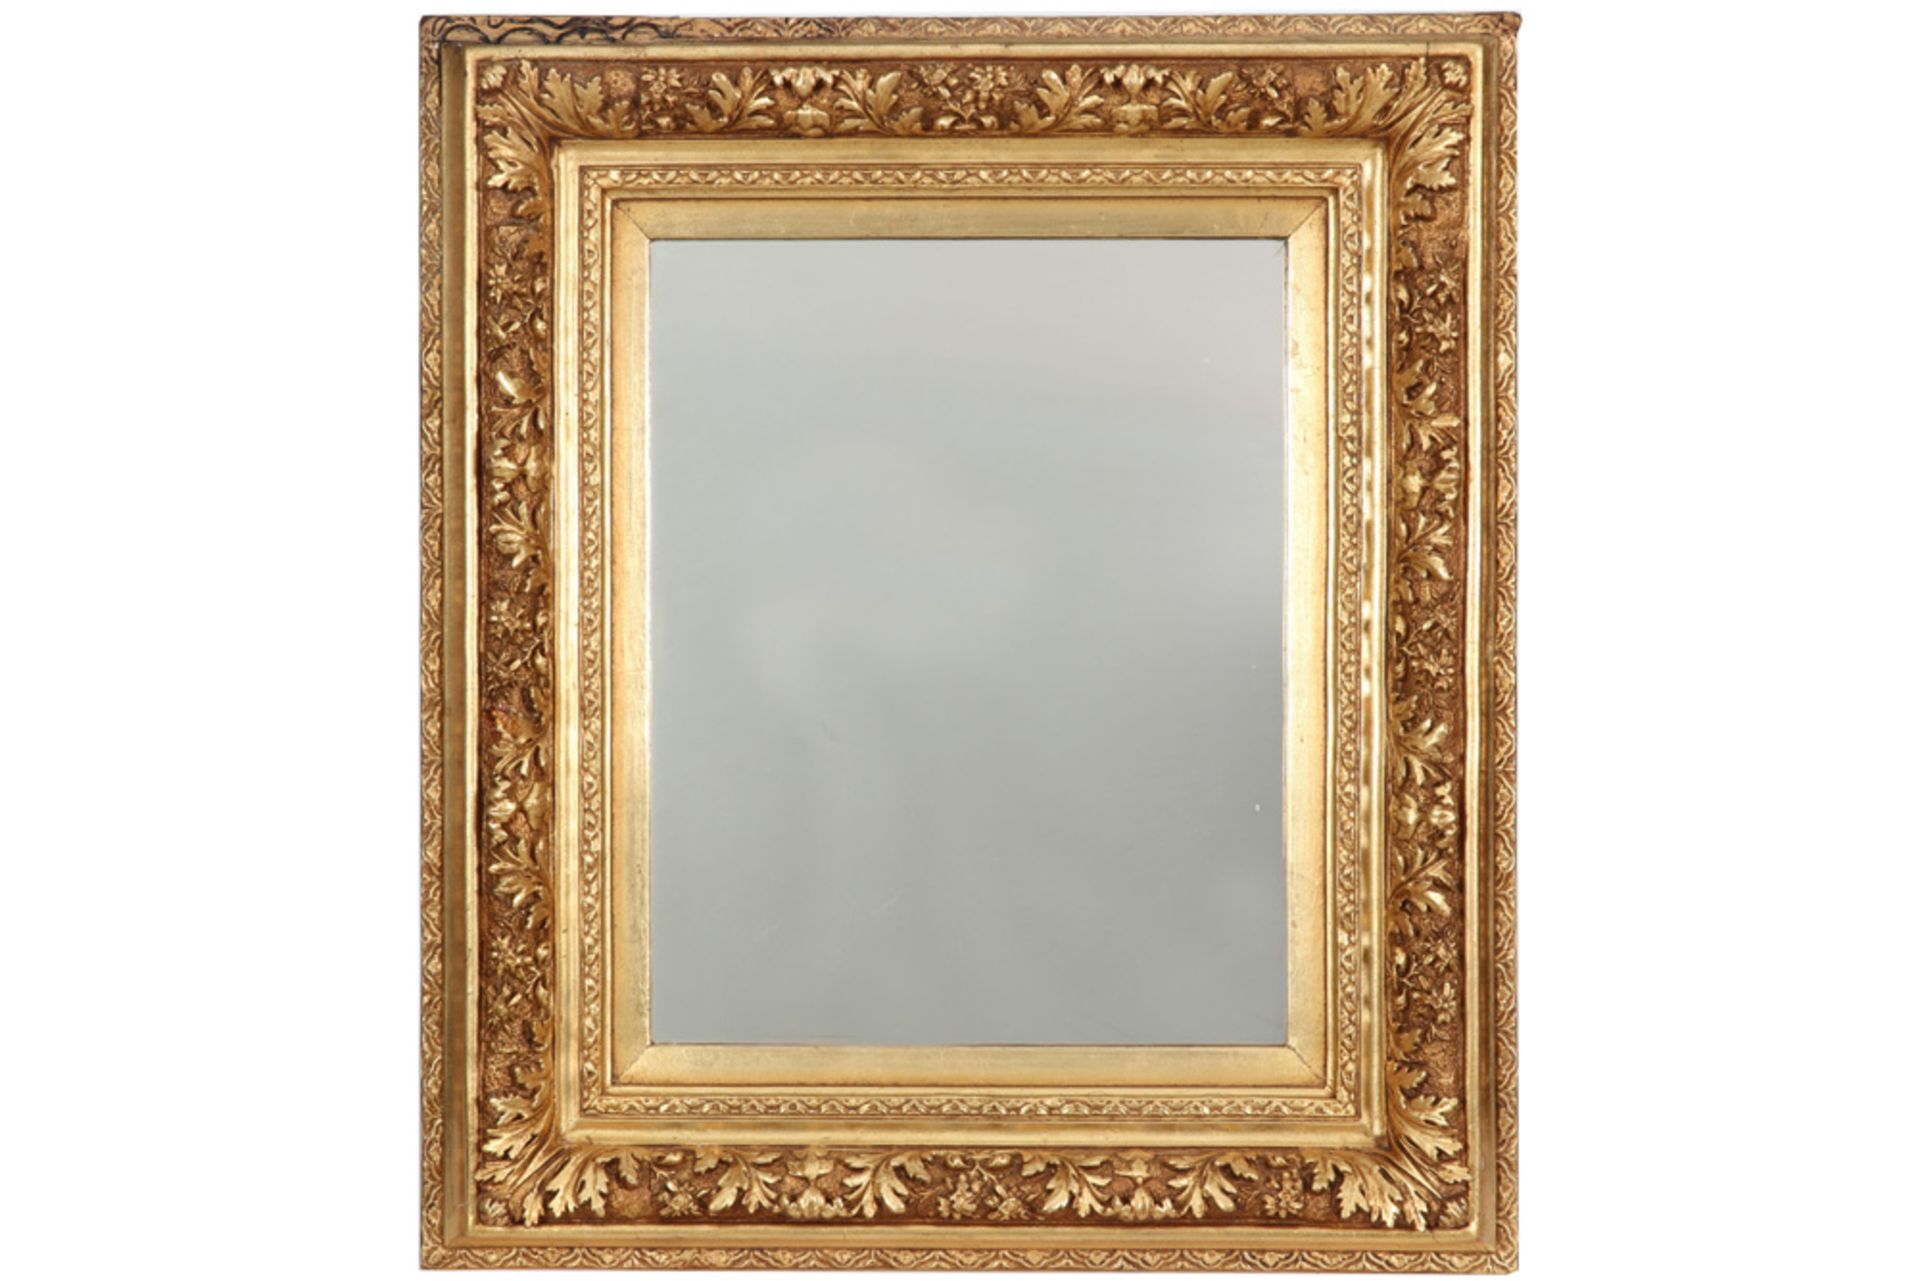 antique frame in gilded wood with a mirror || Gedoreerde houten kader met spiegel - 71 x 65